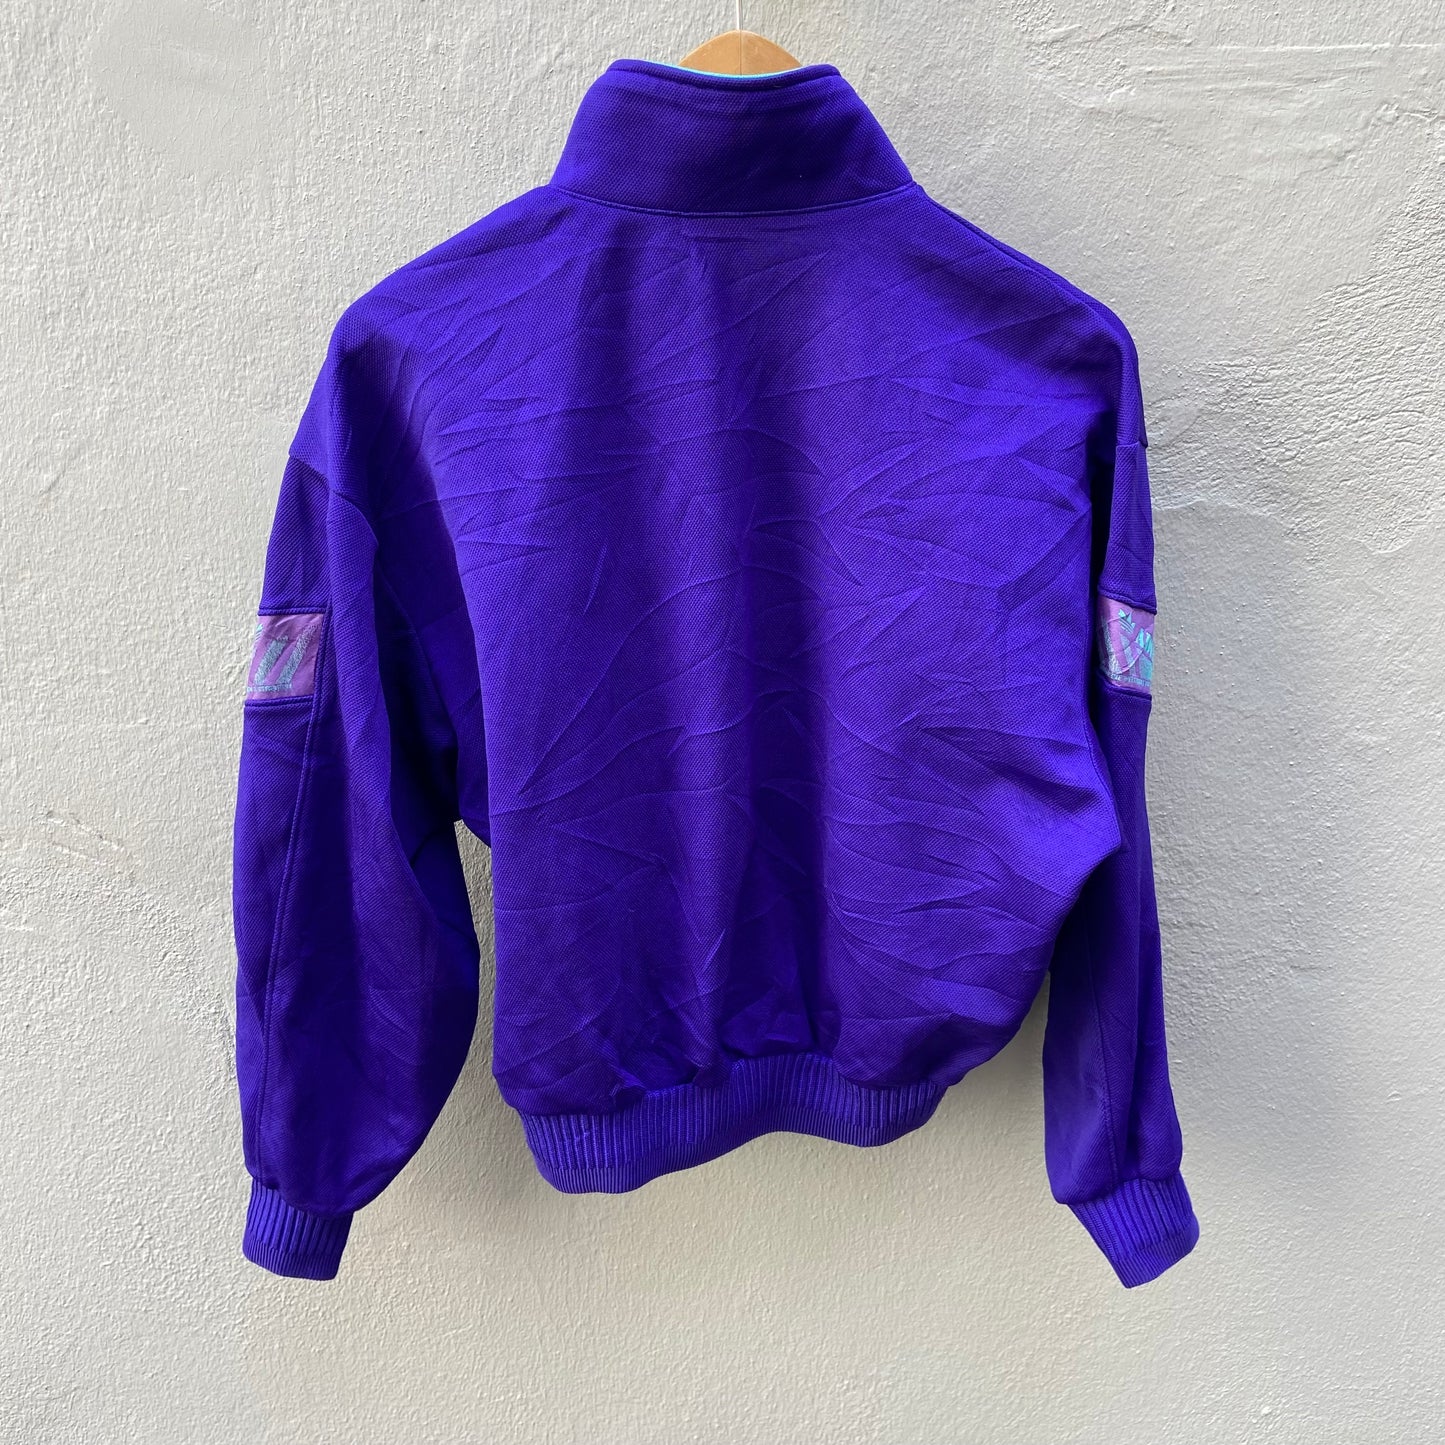 Purple Adidas Originals Track Suit